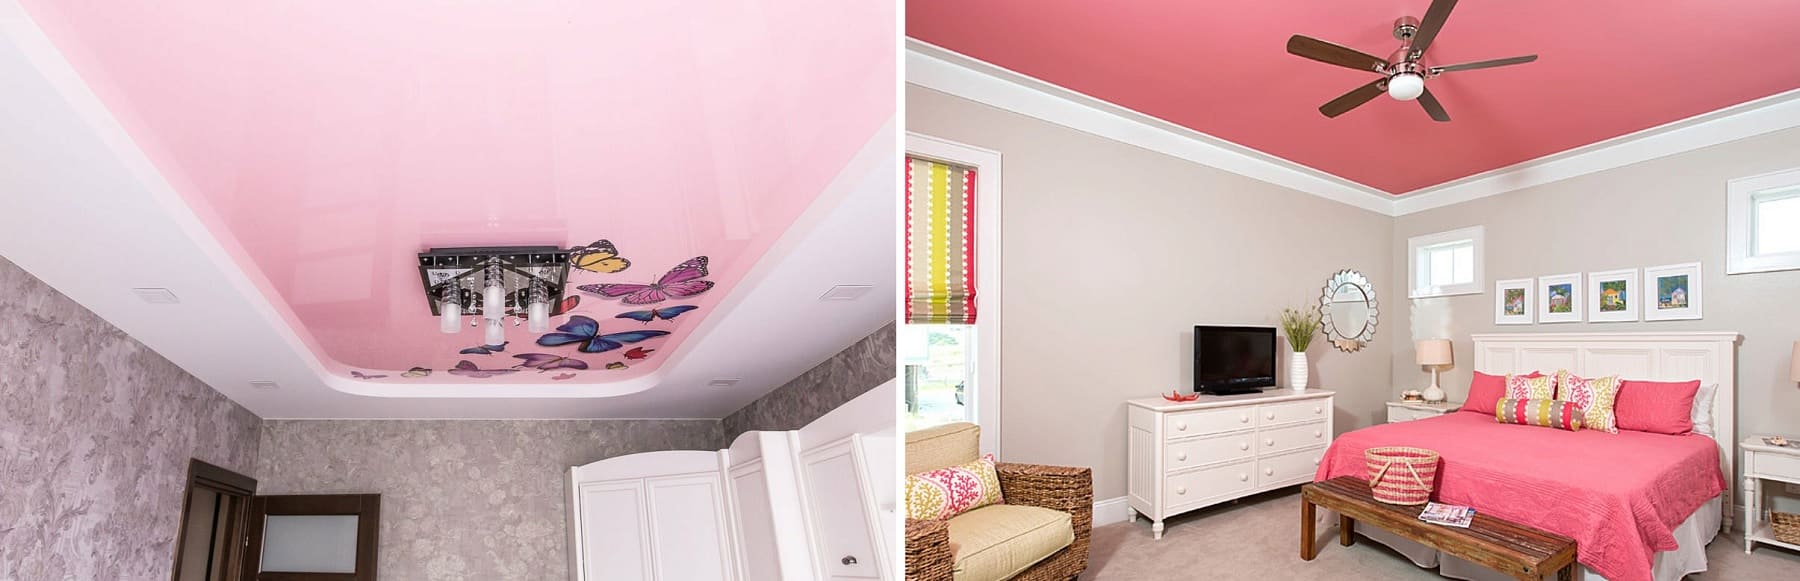 Заказать розовый натяжной потолок с установкой от компании Alezi: цены, фото, примеры, работ, онлайн-калькулятор